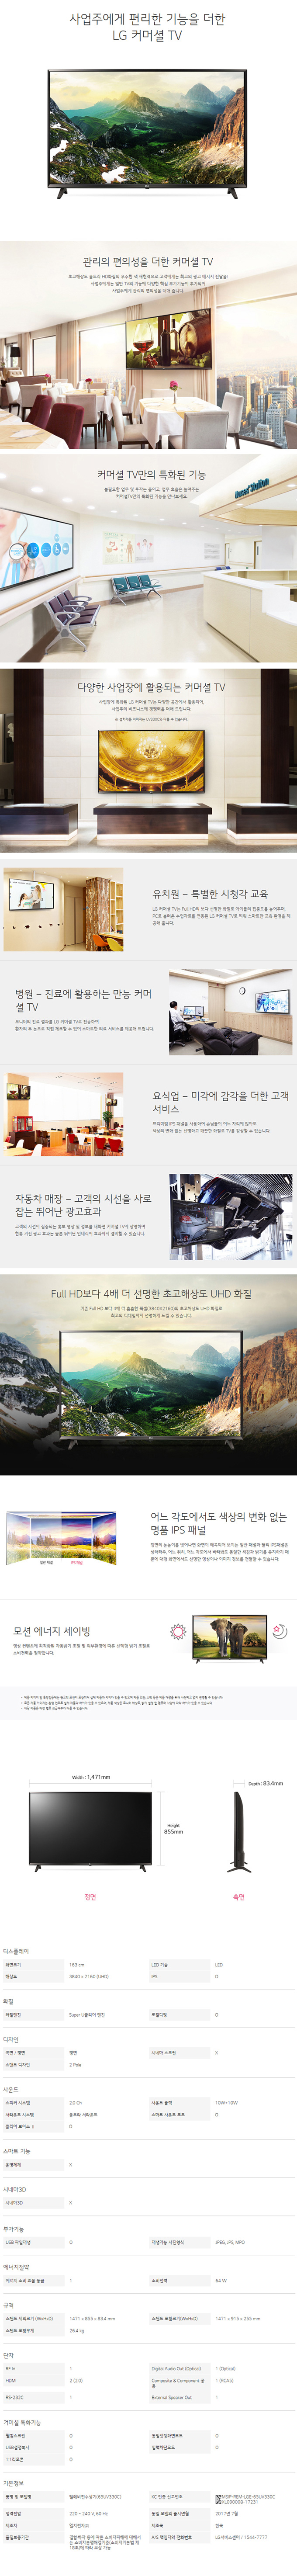 중랑케이블 - LG 65인치 UHD TV (65UK681C) 상세보기